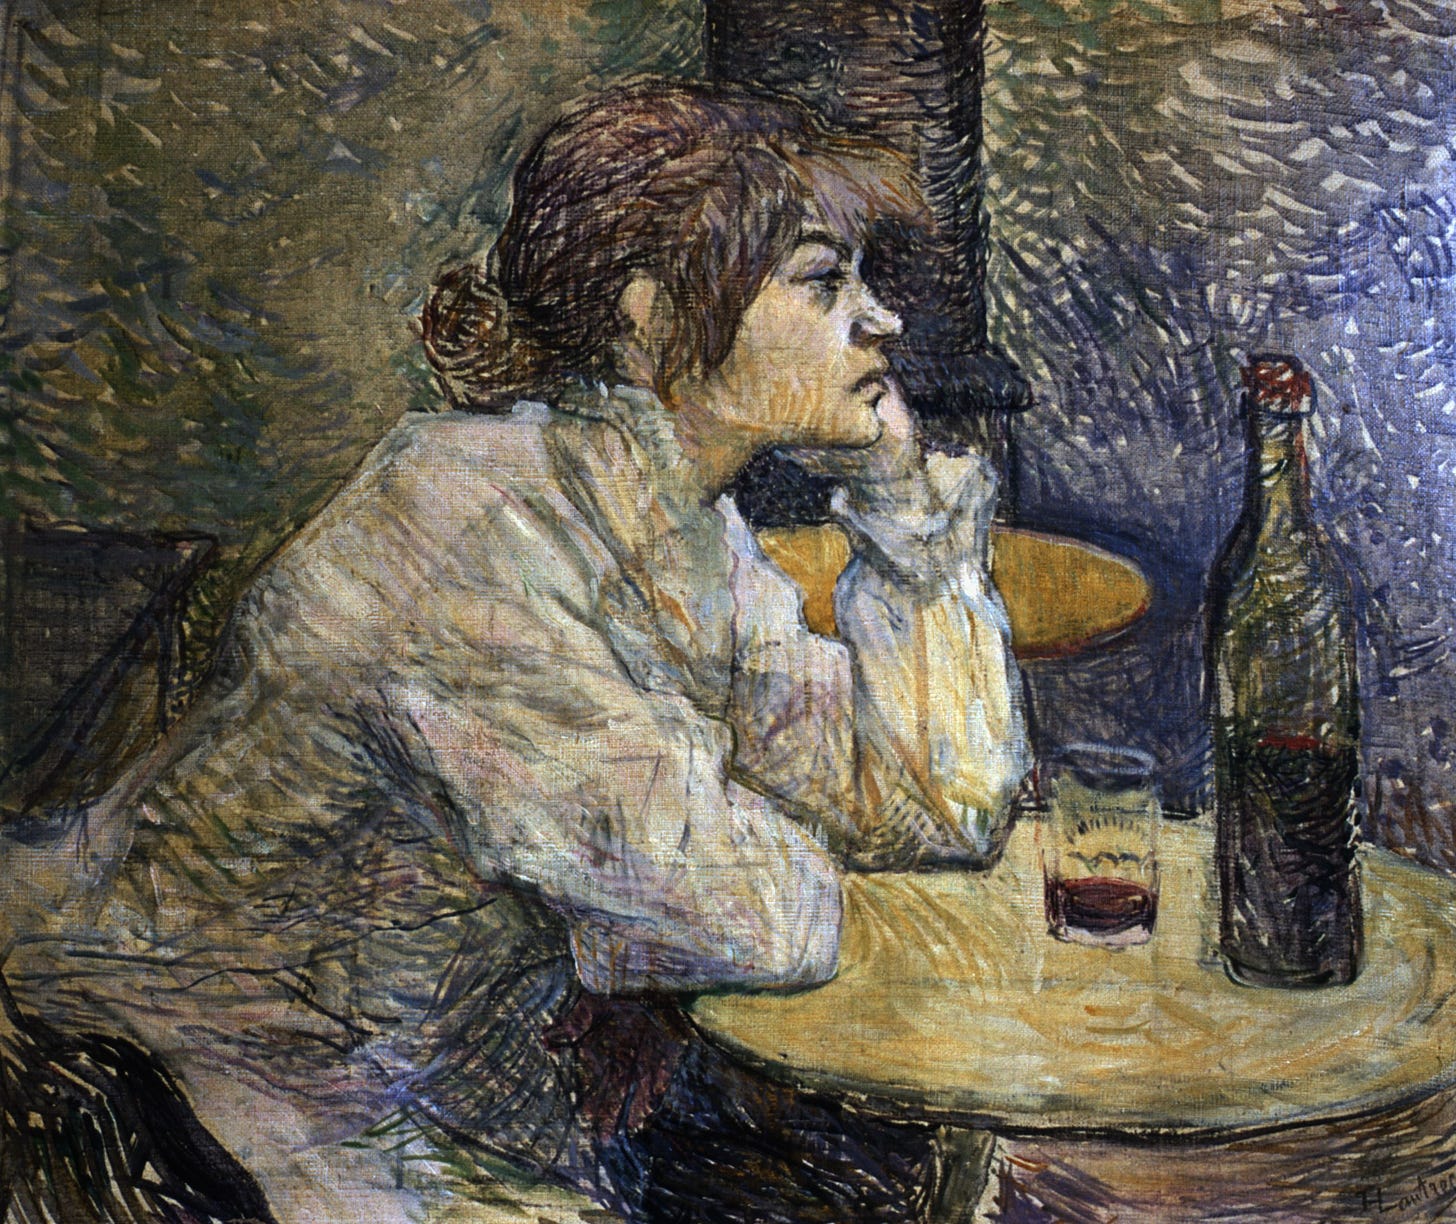 Henri de Toulouse-Lautrec: Artist of Bohemian Paris